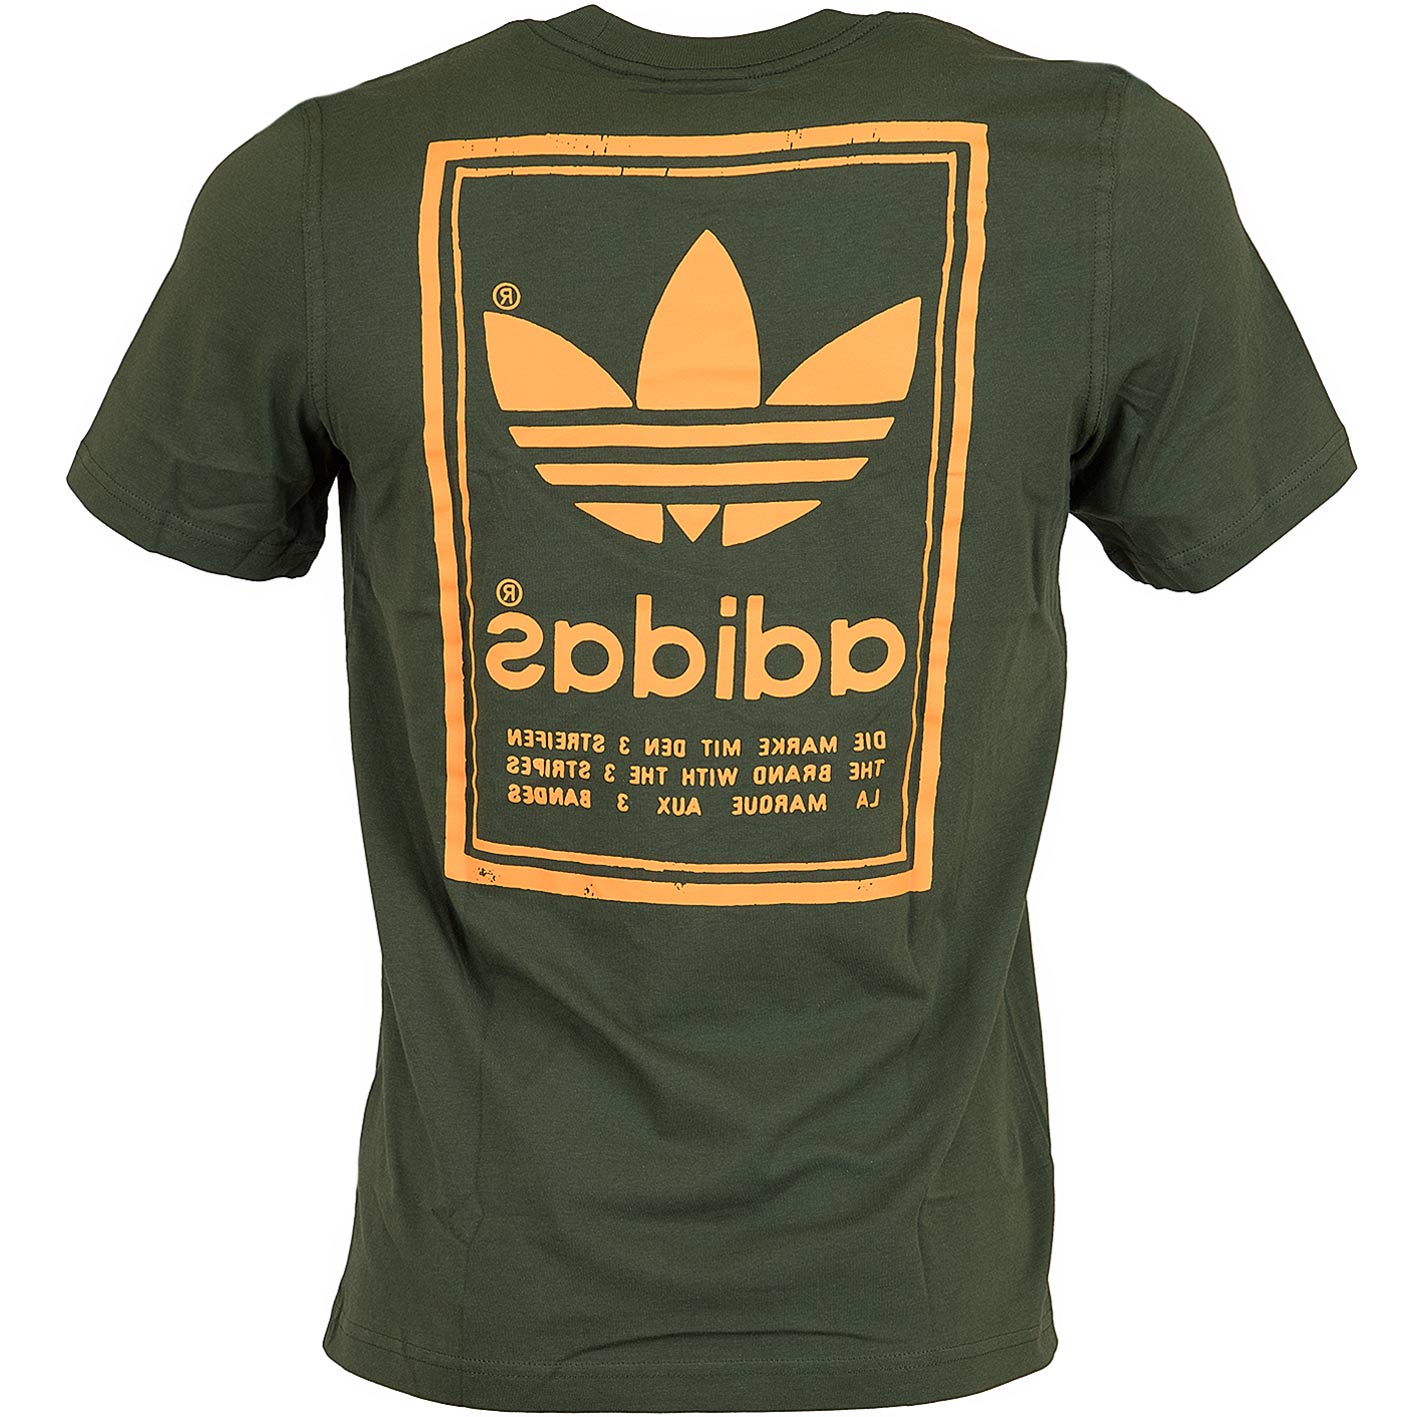 ☆ Adidas Originals T-Shirt Vintage oliv - hier bestellen!